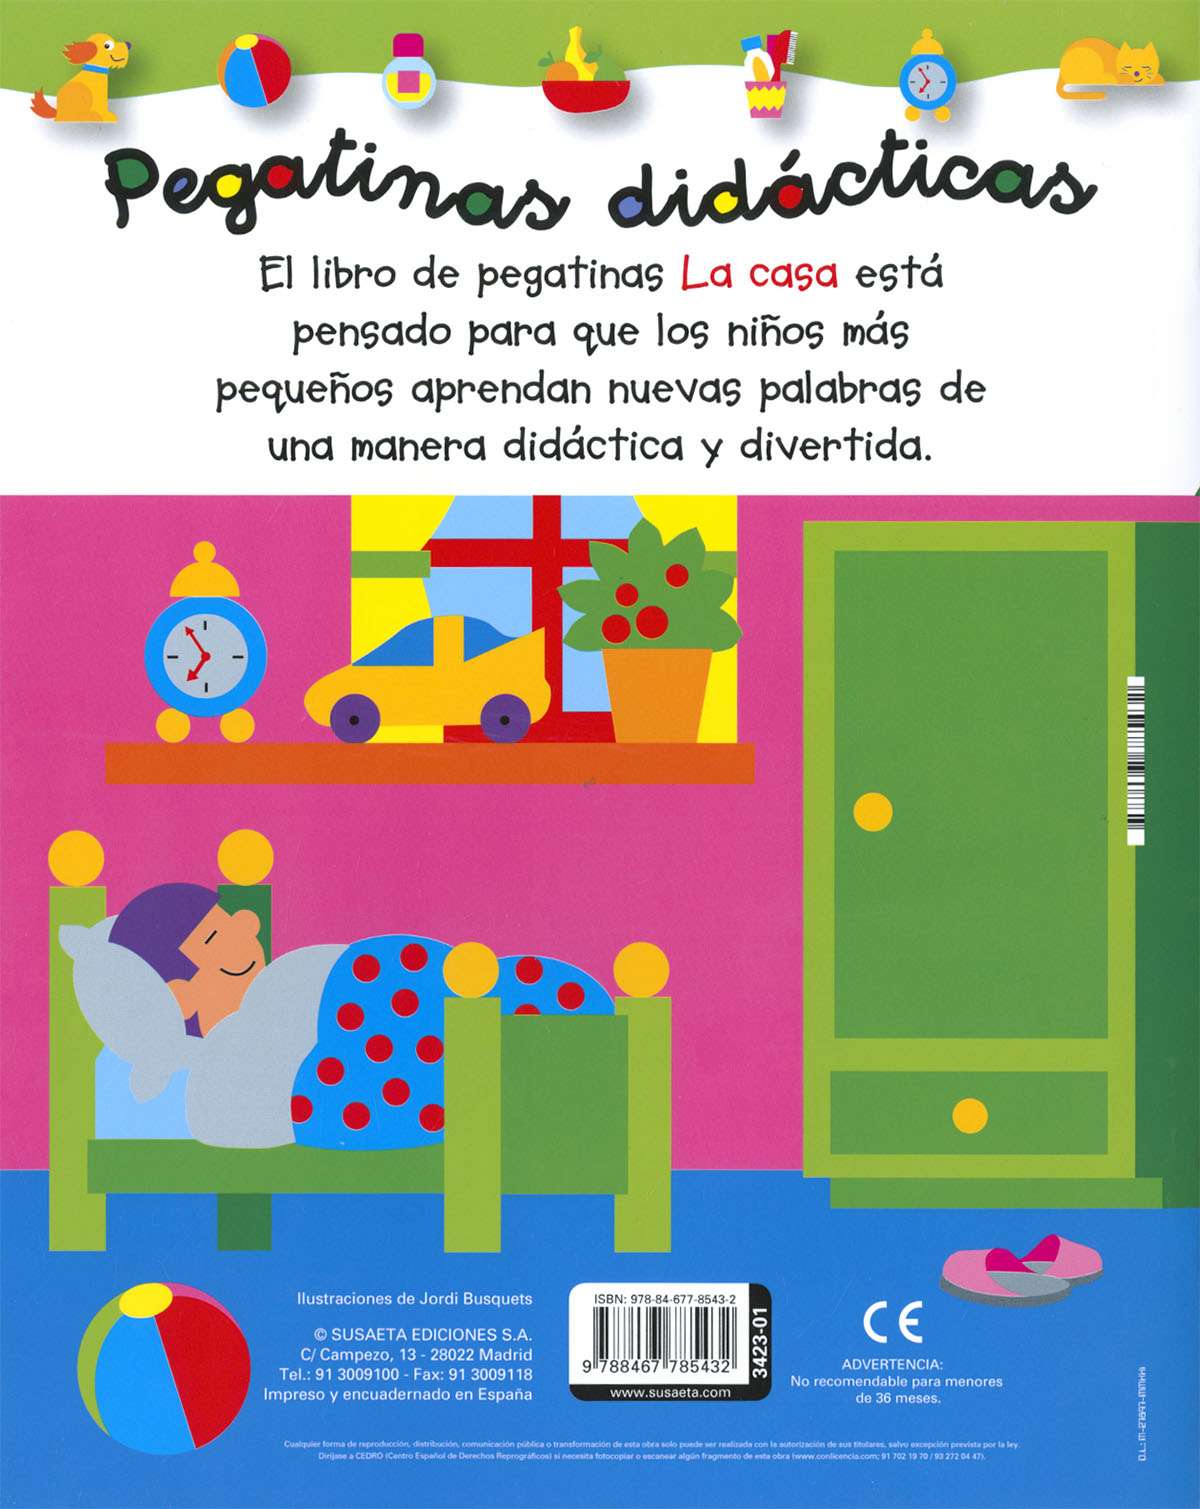 Pegatinas animales 2 años | Editorial Susaeta - Venta de libros infantiles,  venta de libros, libros de cocina, atlas ilustrados